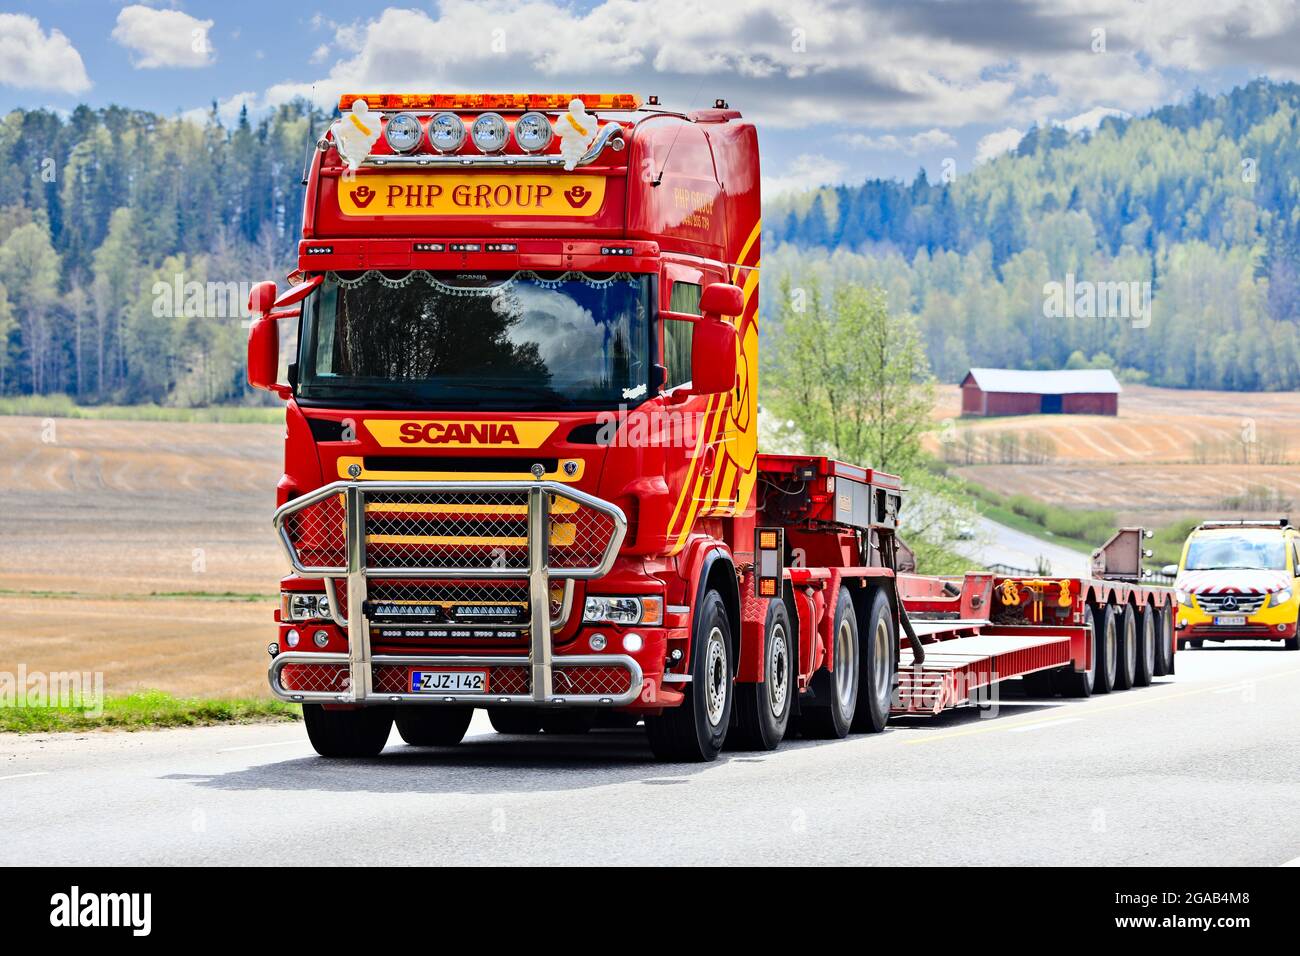 Scania camión del grupo PHP delante del remolque de cuello de cisne regresa de la entrega de una carga sobredimensionada, seguido por el vehículo escolta. Salo, Finlandia. 15 de mayo de 2021 Foto de stock